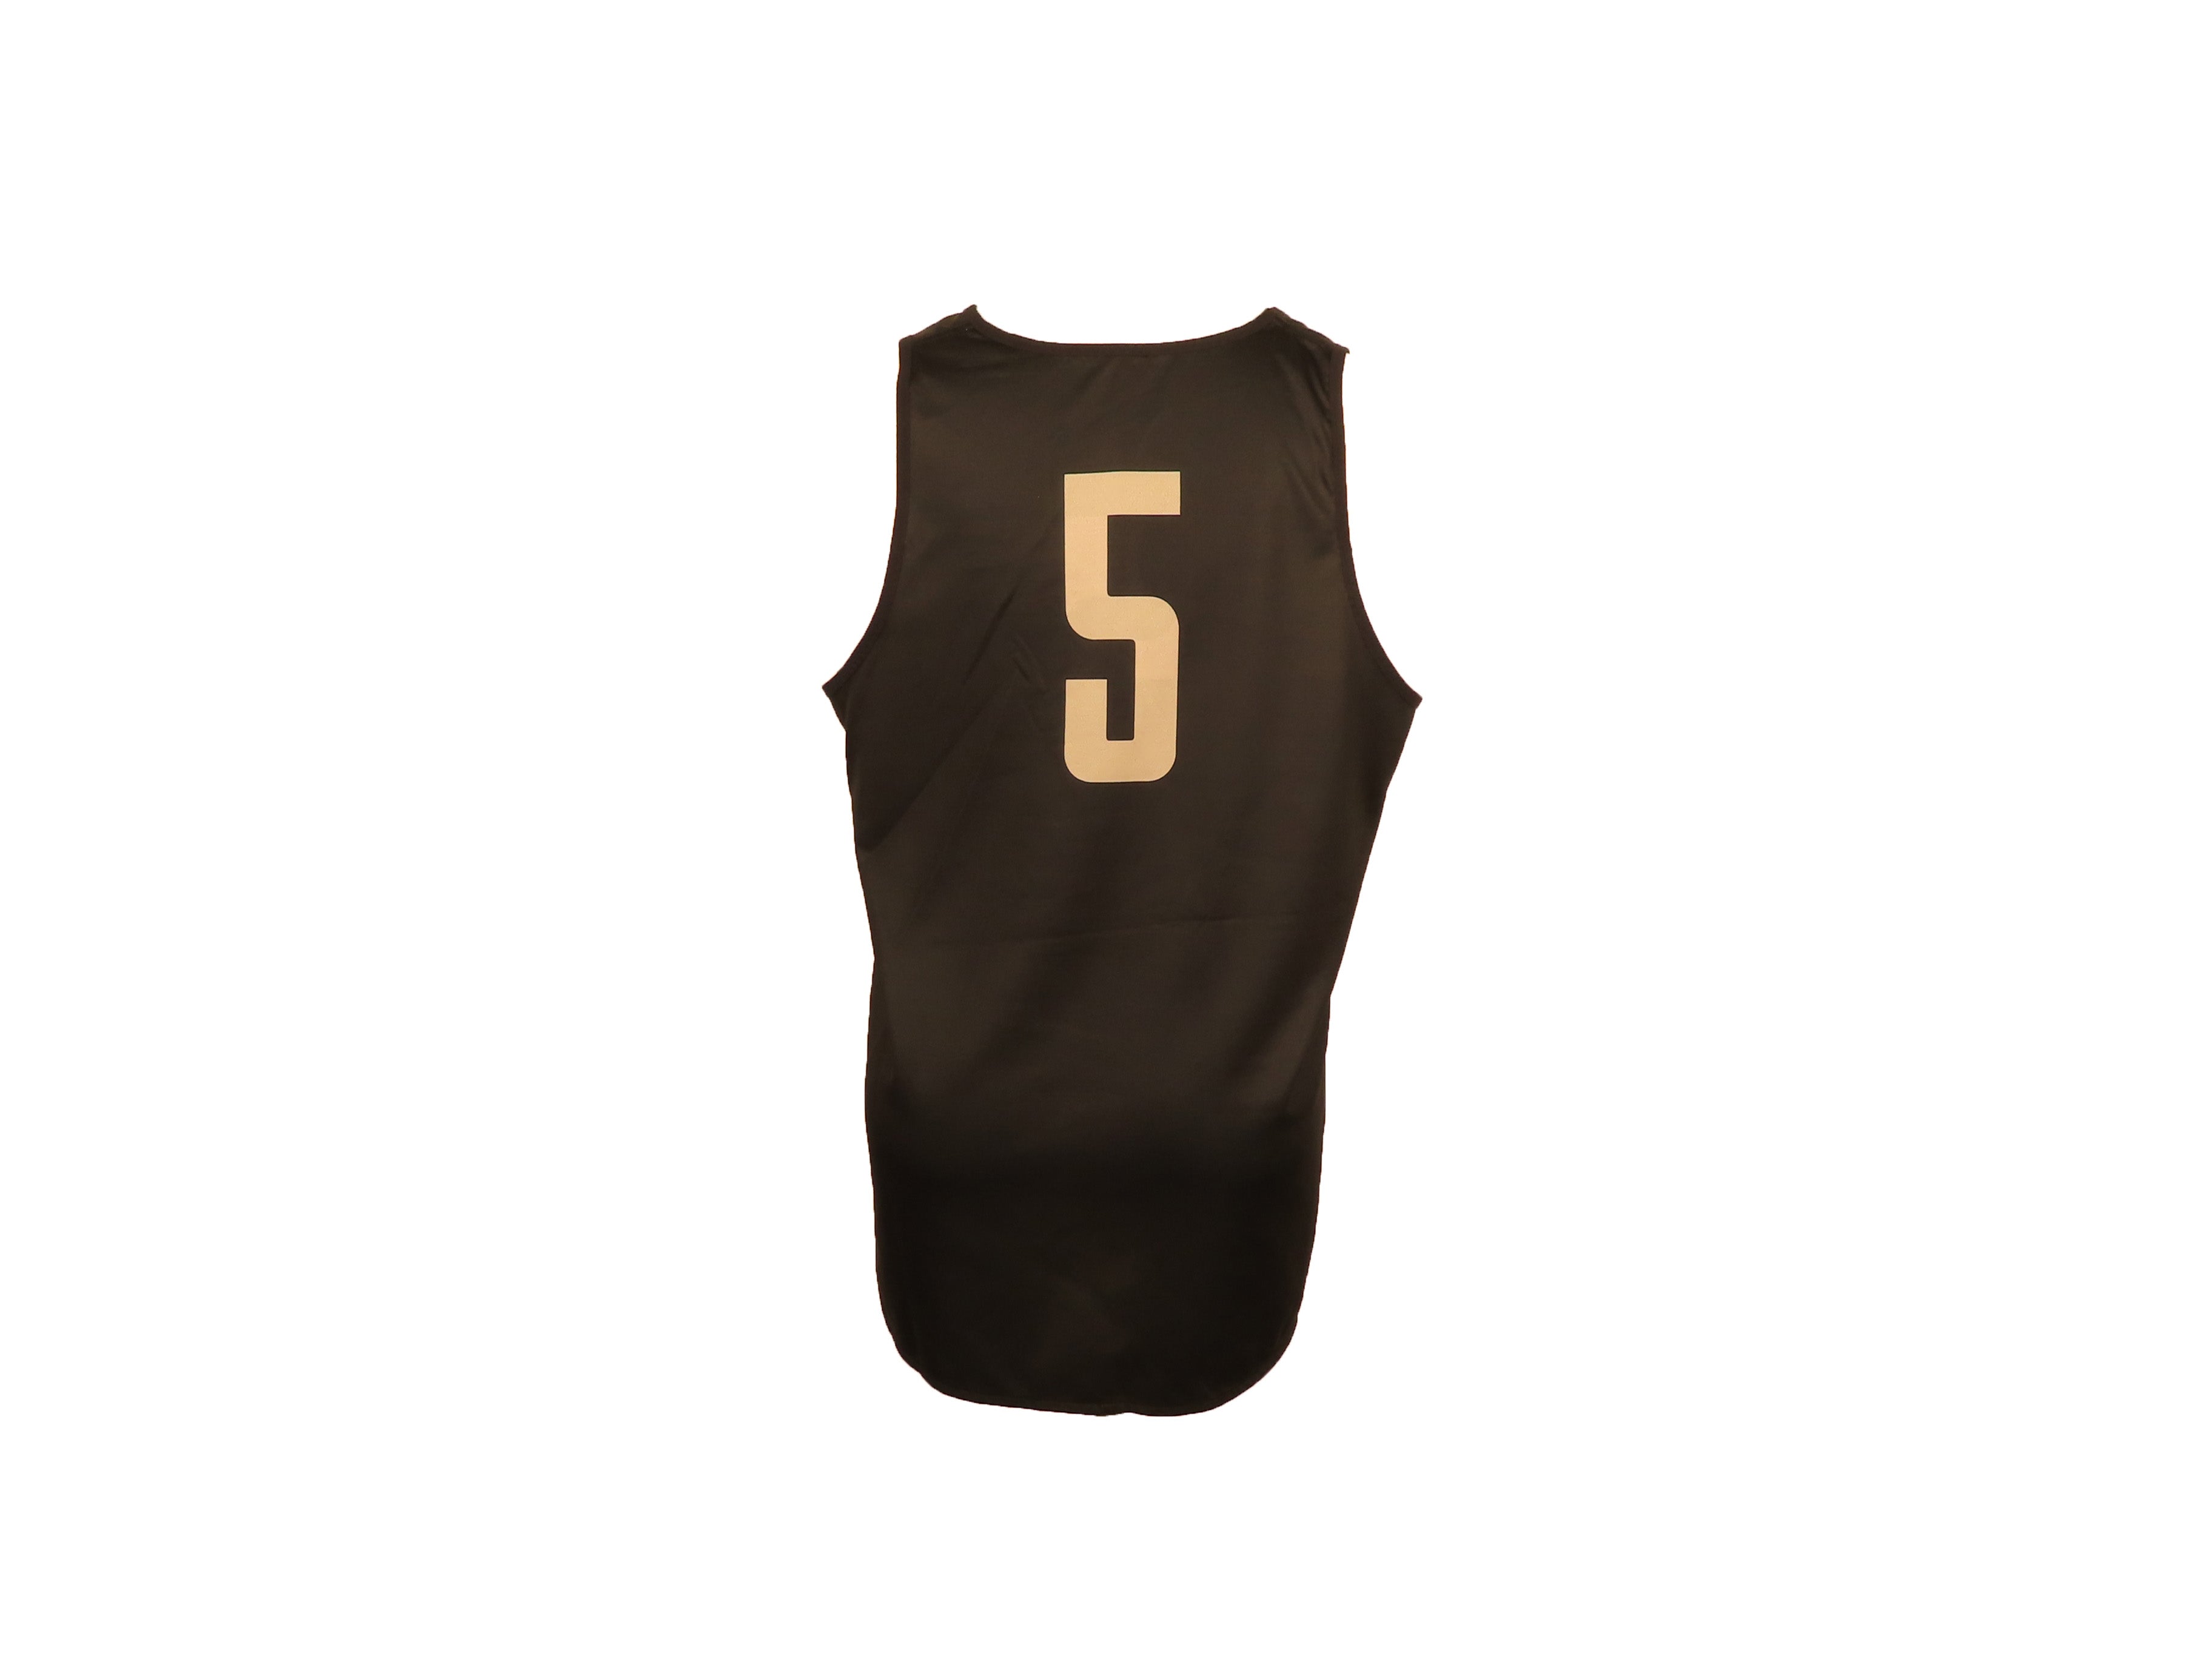 Nike Gray & Black Reversible Women's Basketball #5 Jersey Size XL